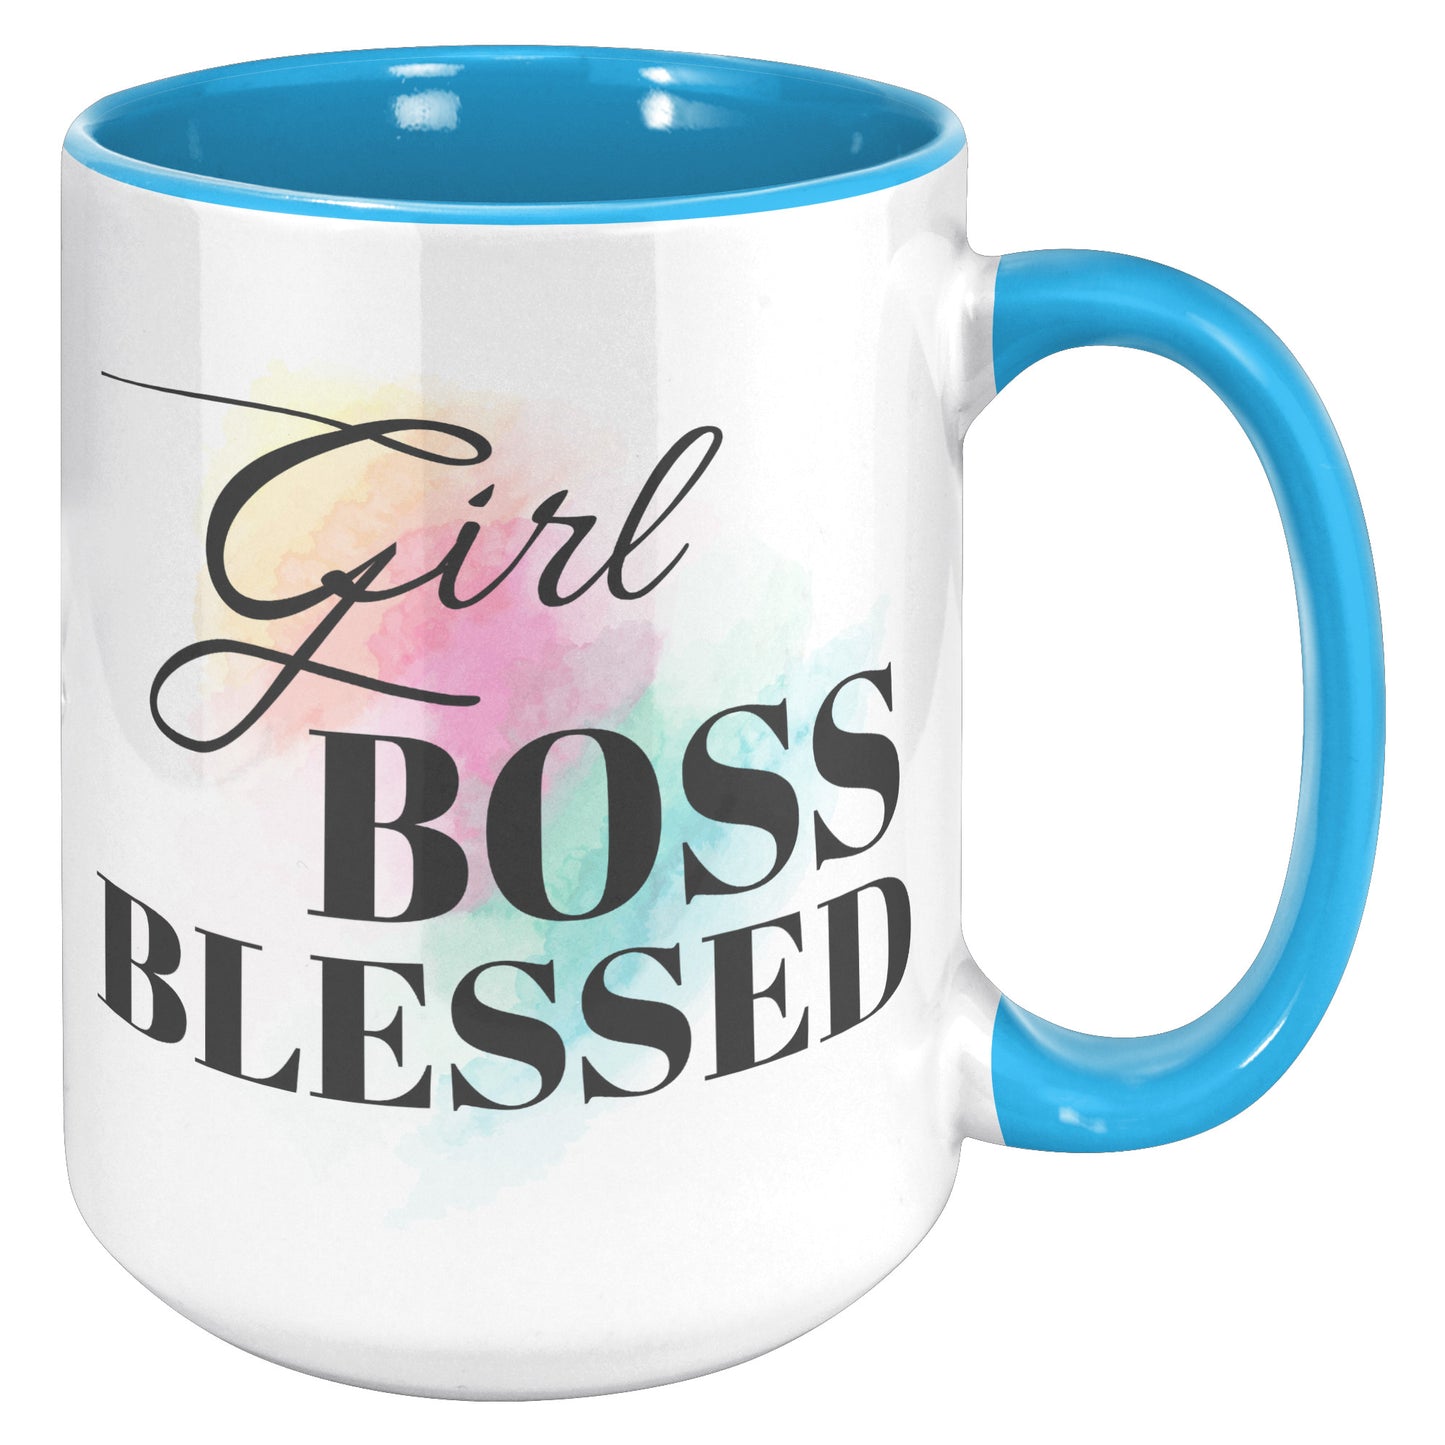 Blessed Girl Boss 15 oz Accent Ceramic Mug